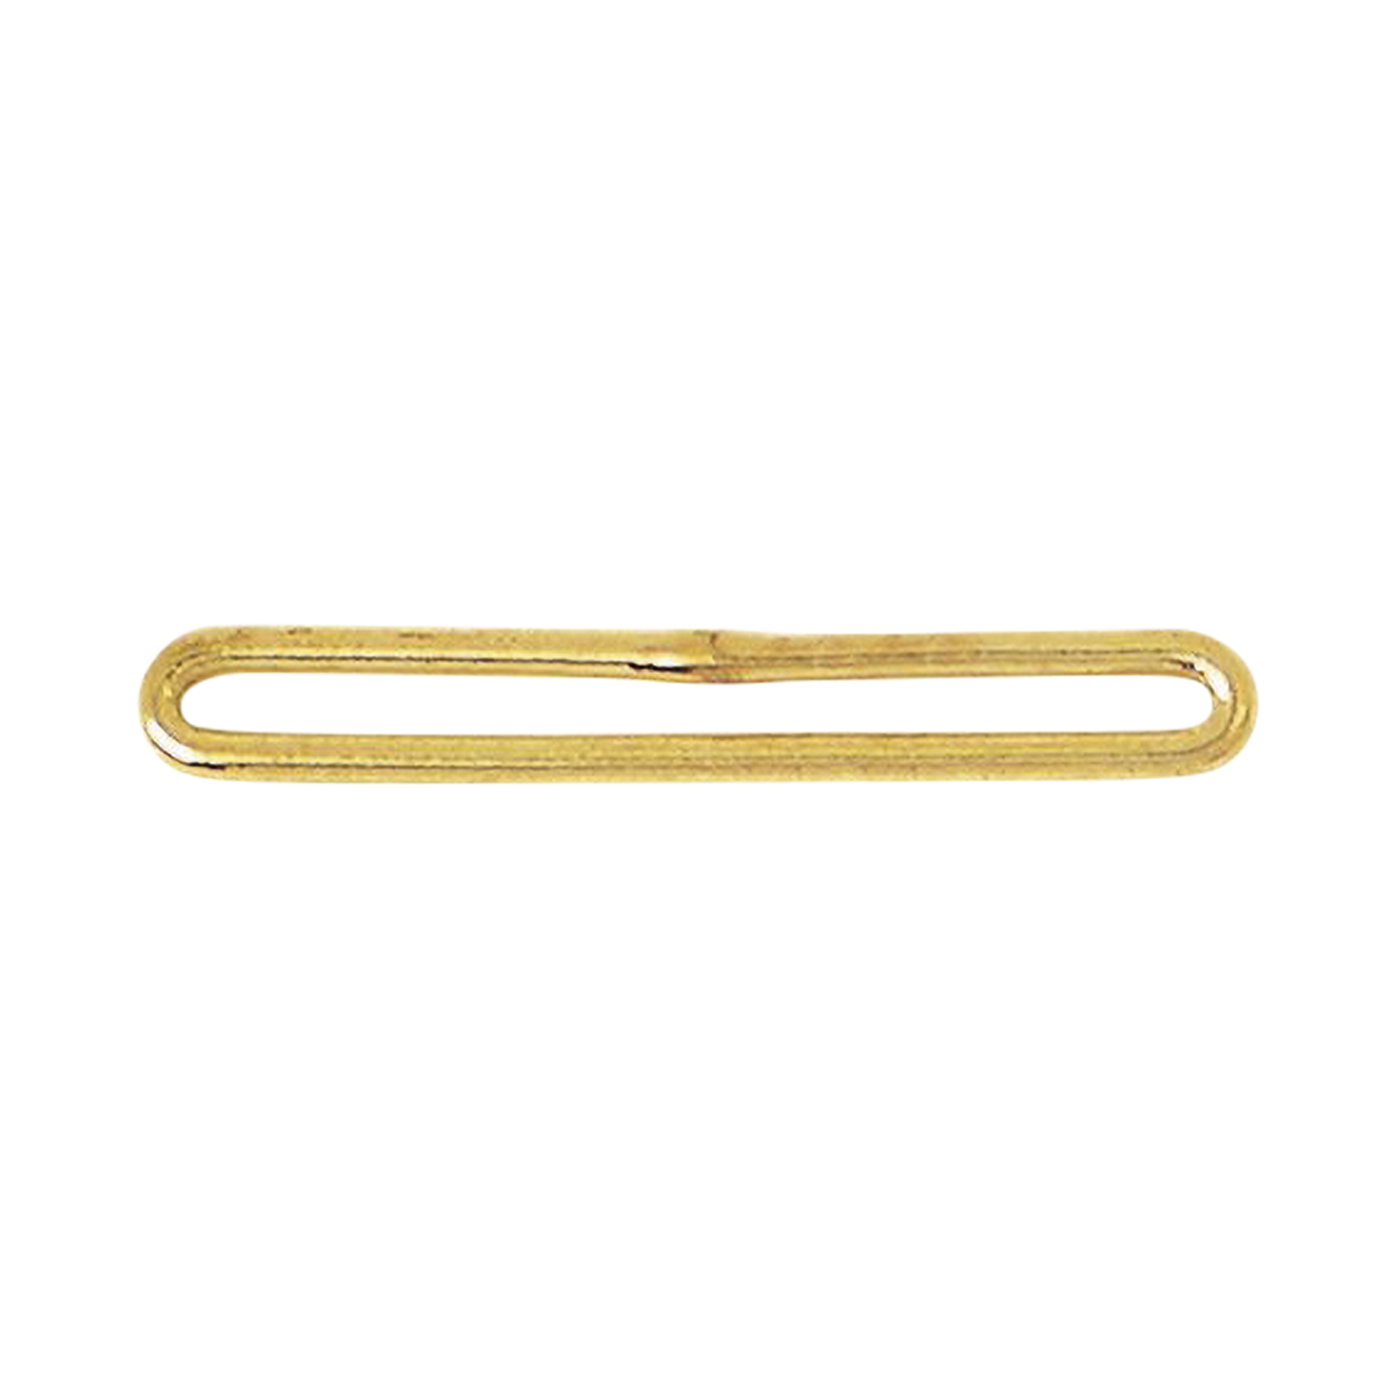 Perlsteg, 925 Ag vergoldet, 3-reihig, 19 mm - 1 Stück